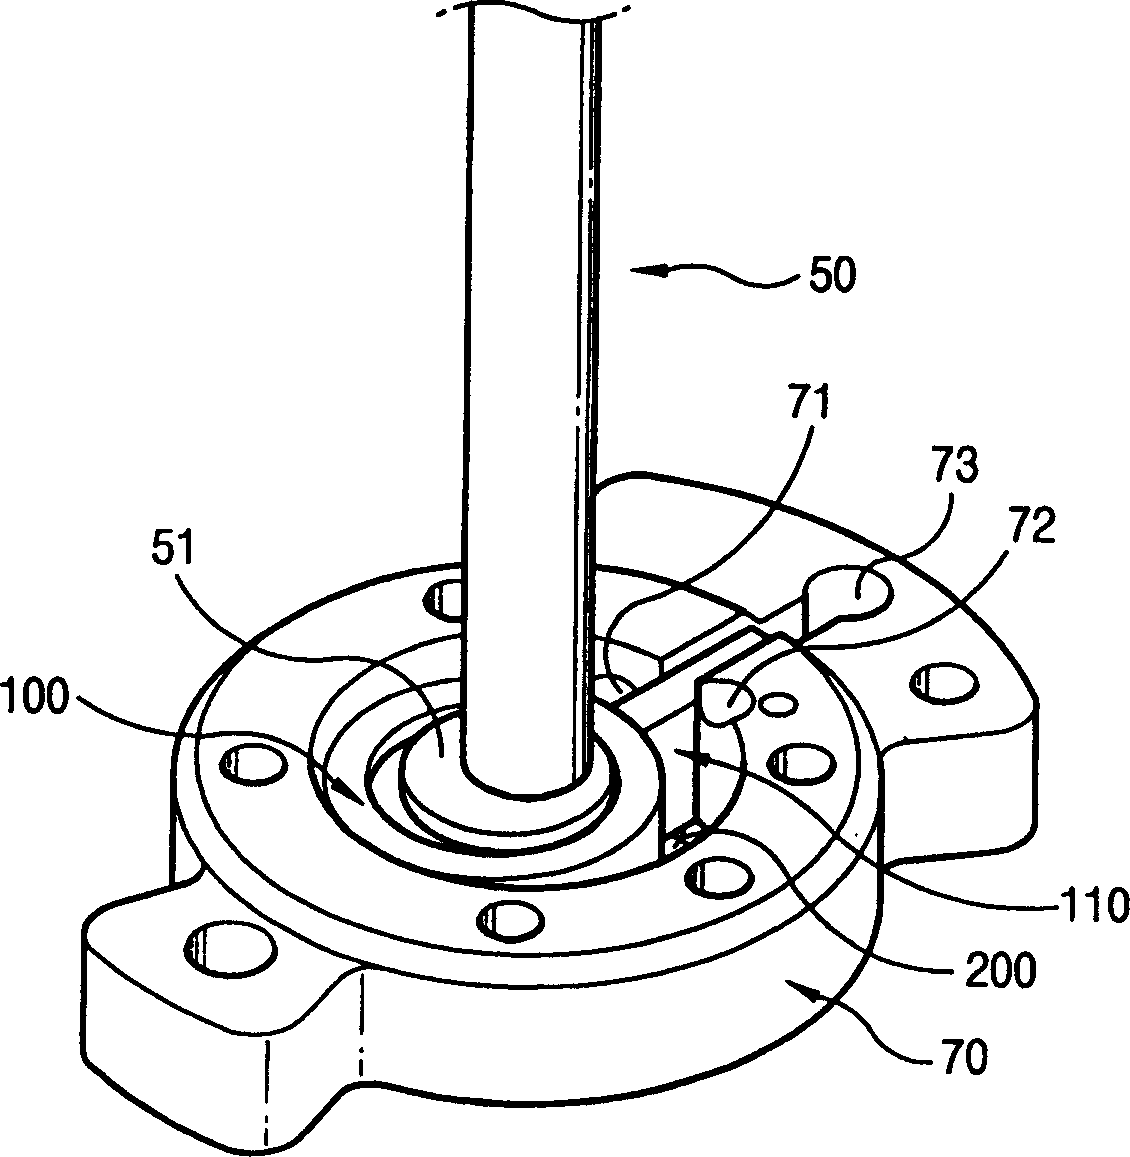 Closed rotary compressor